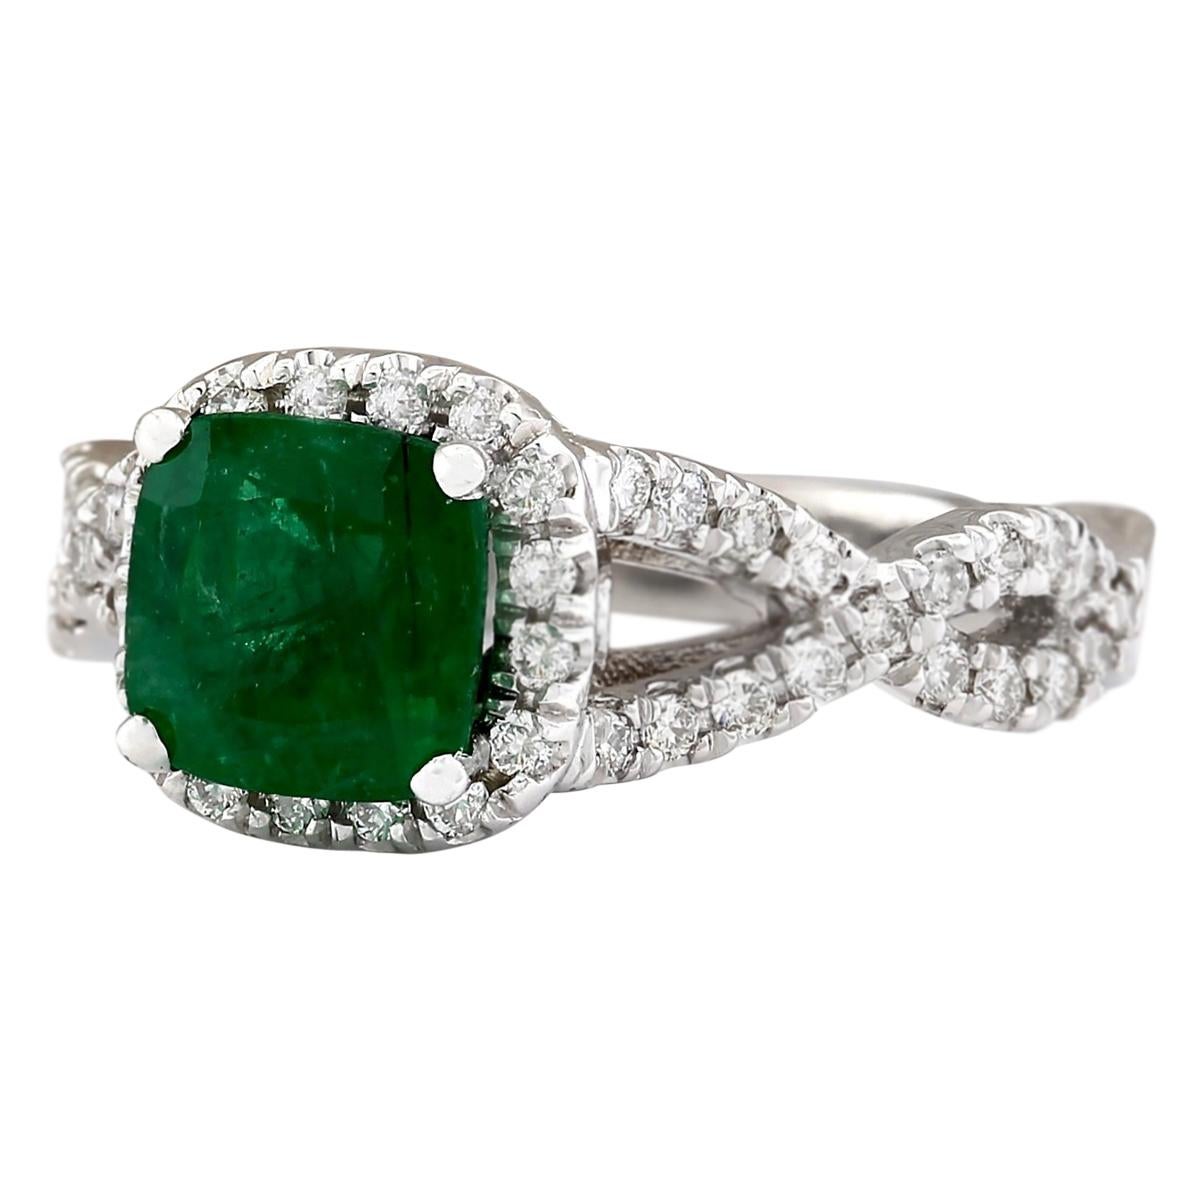 2.49 Carat Natural Emerald 14 Karat White Gold Diamond Ring
Stamped: 14K White Gold
Total Ring Weight: 5.4 Grams
Total Natural Emerald Weight is 1.59 Carat (Measures: 7.00x7.00 mm)
Color: Green
Total Natural Diamond Weight is 0.90 Carat
Color: F-G,